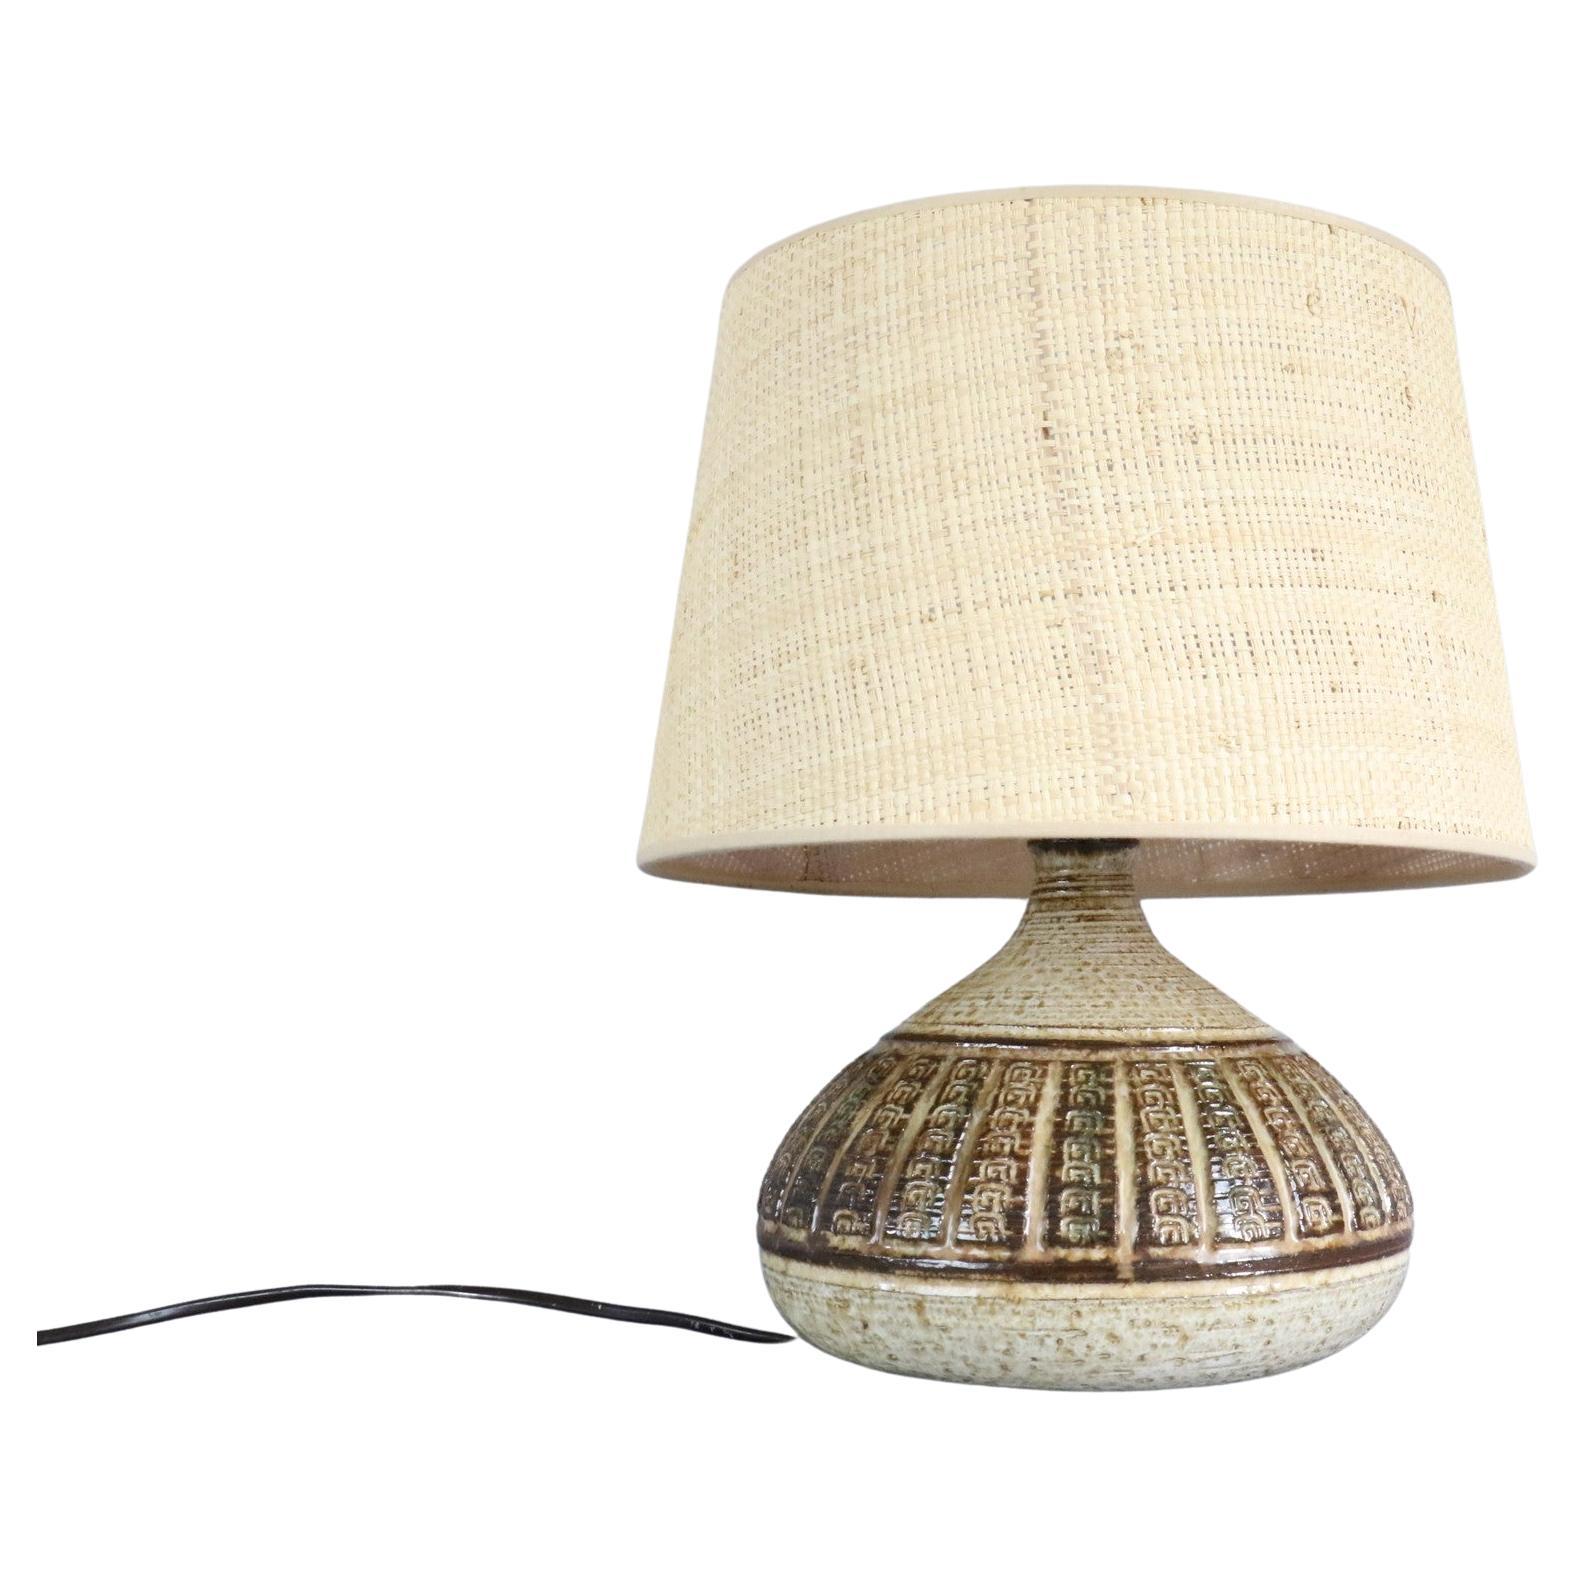 Lampe en céramique du milieu du siècle par Marcel Giraud - Vallauris - années 1960.

C'est une belle lampe à poser artisanale à la fois brute et élégante qui peut se fondre aussi bien dans une ambiance campagne chic que dans un intérieur